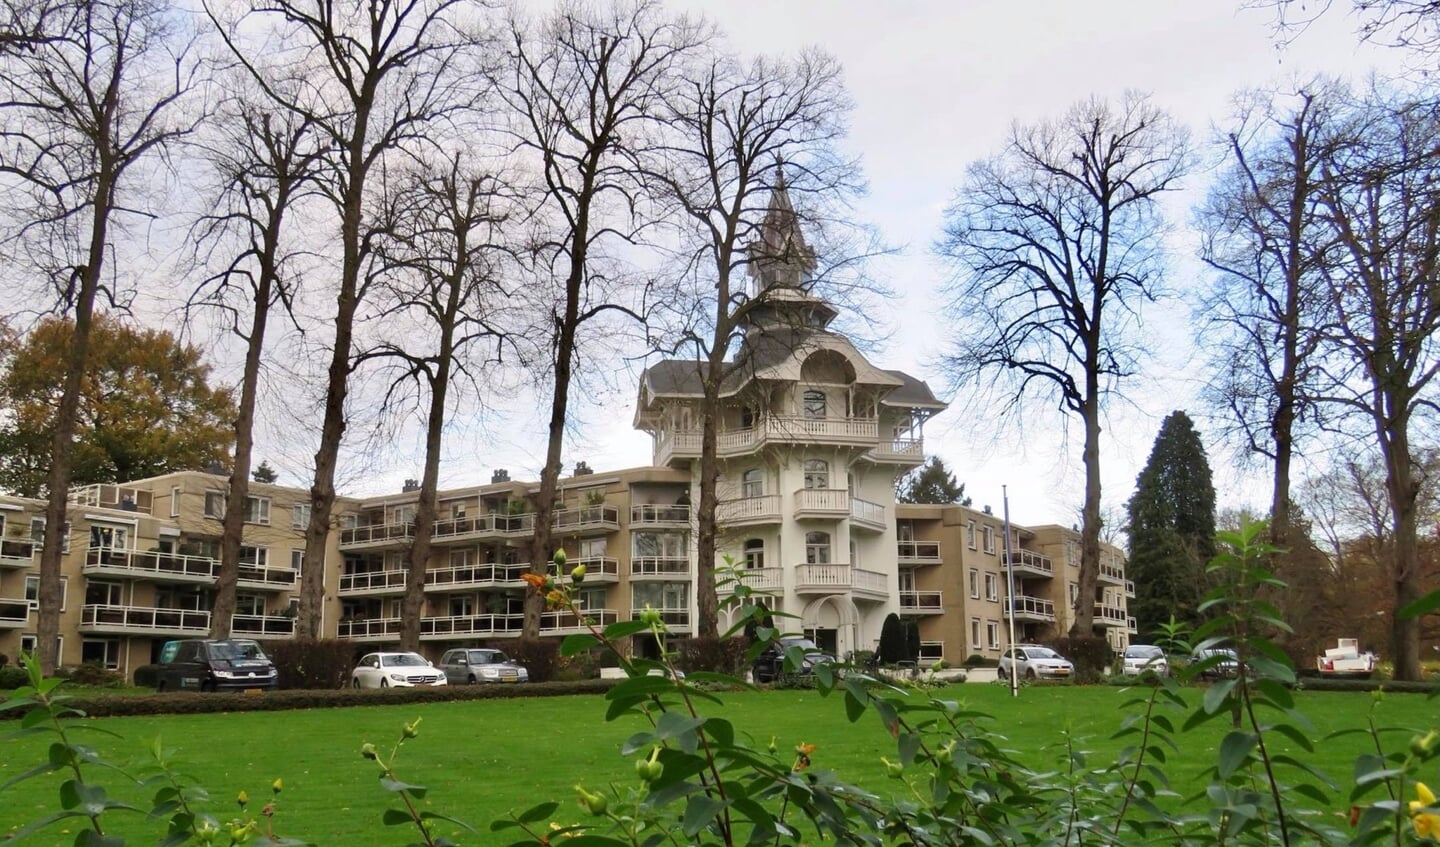 Voormalig Sanatorium/Badhotel aan de Julianalaan  (1888 H.G. Berlage) sinds 1983 appartementen. 